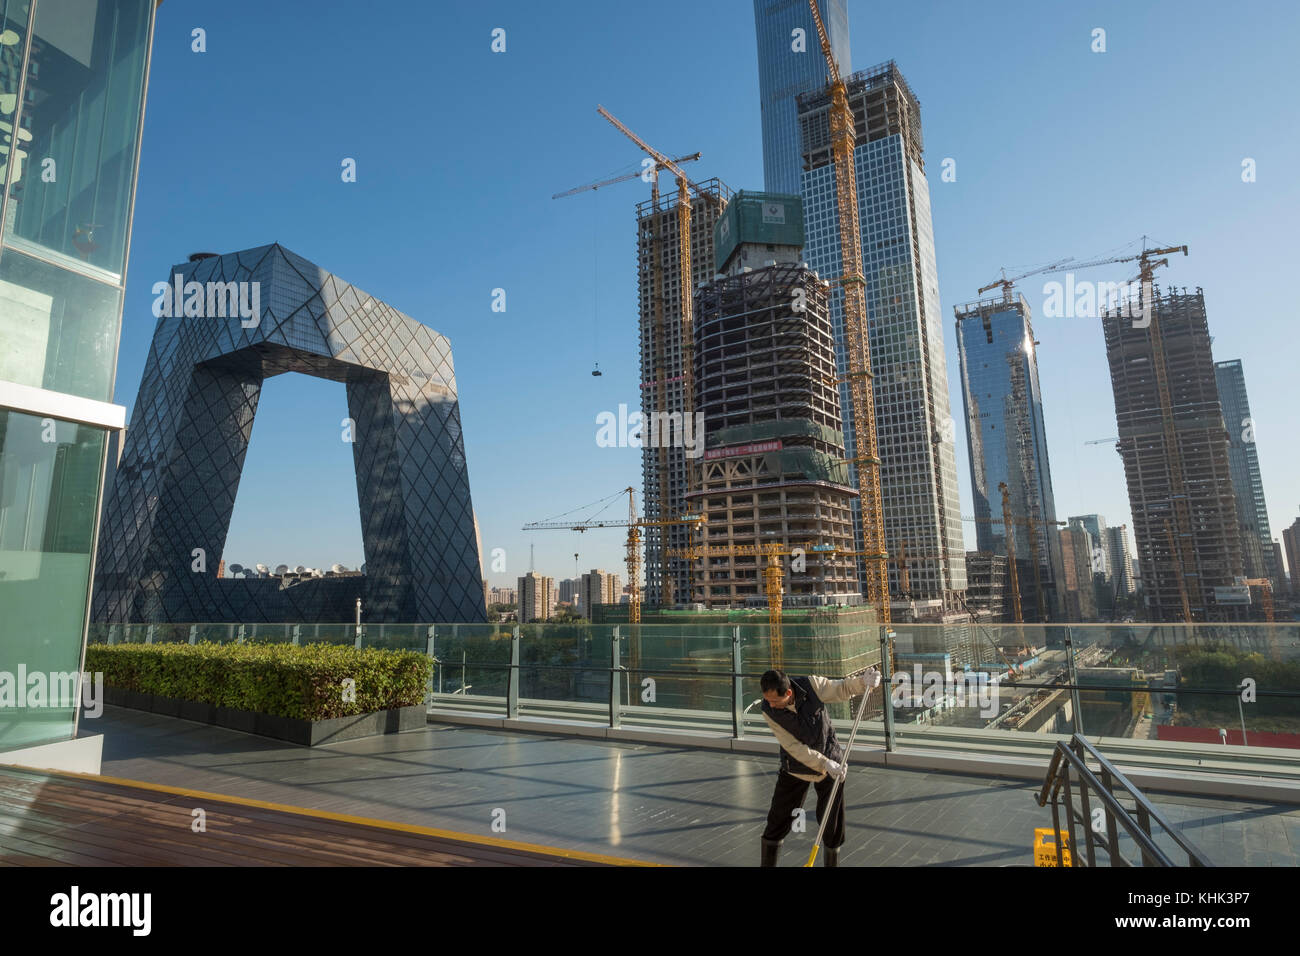 Chine Tour de télévision centrale (CCTV) (à gauche) dans le quartier des affaires de Beijing. 03 novembre 2017 Banque D'Images